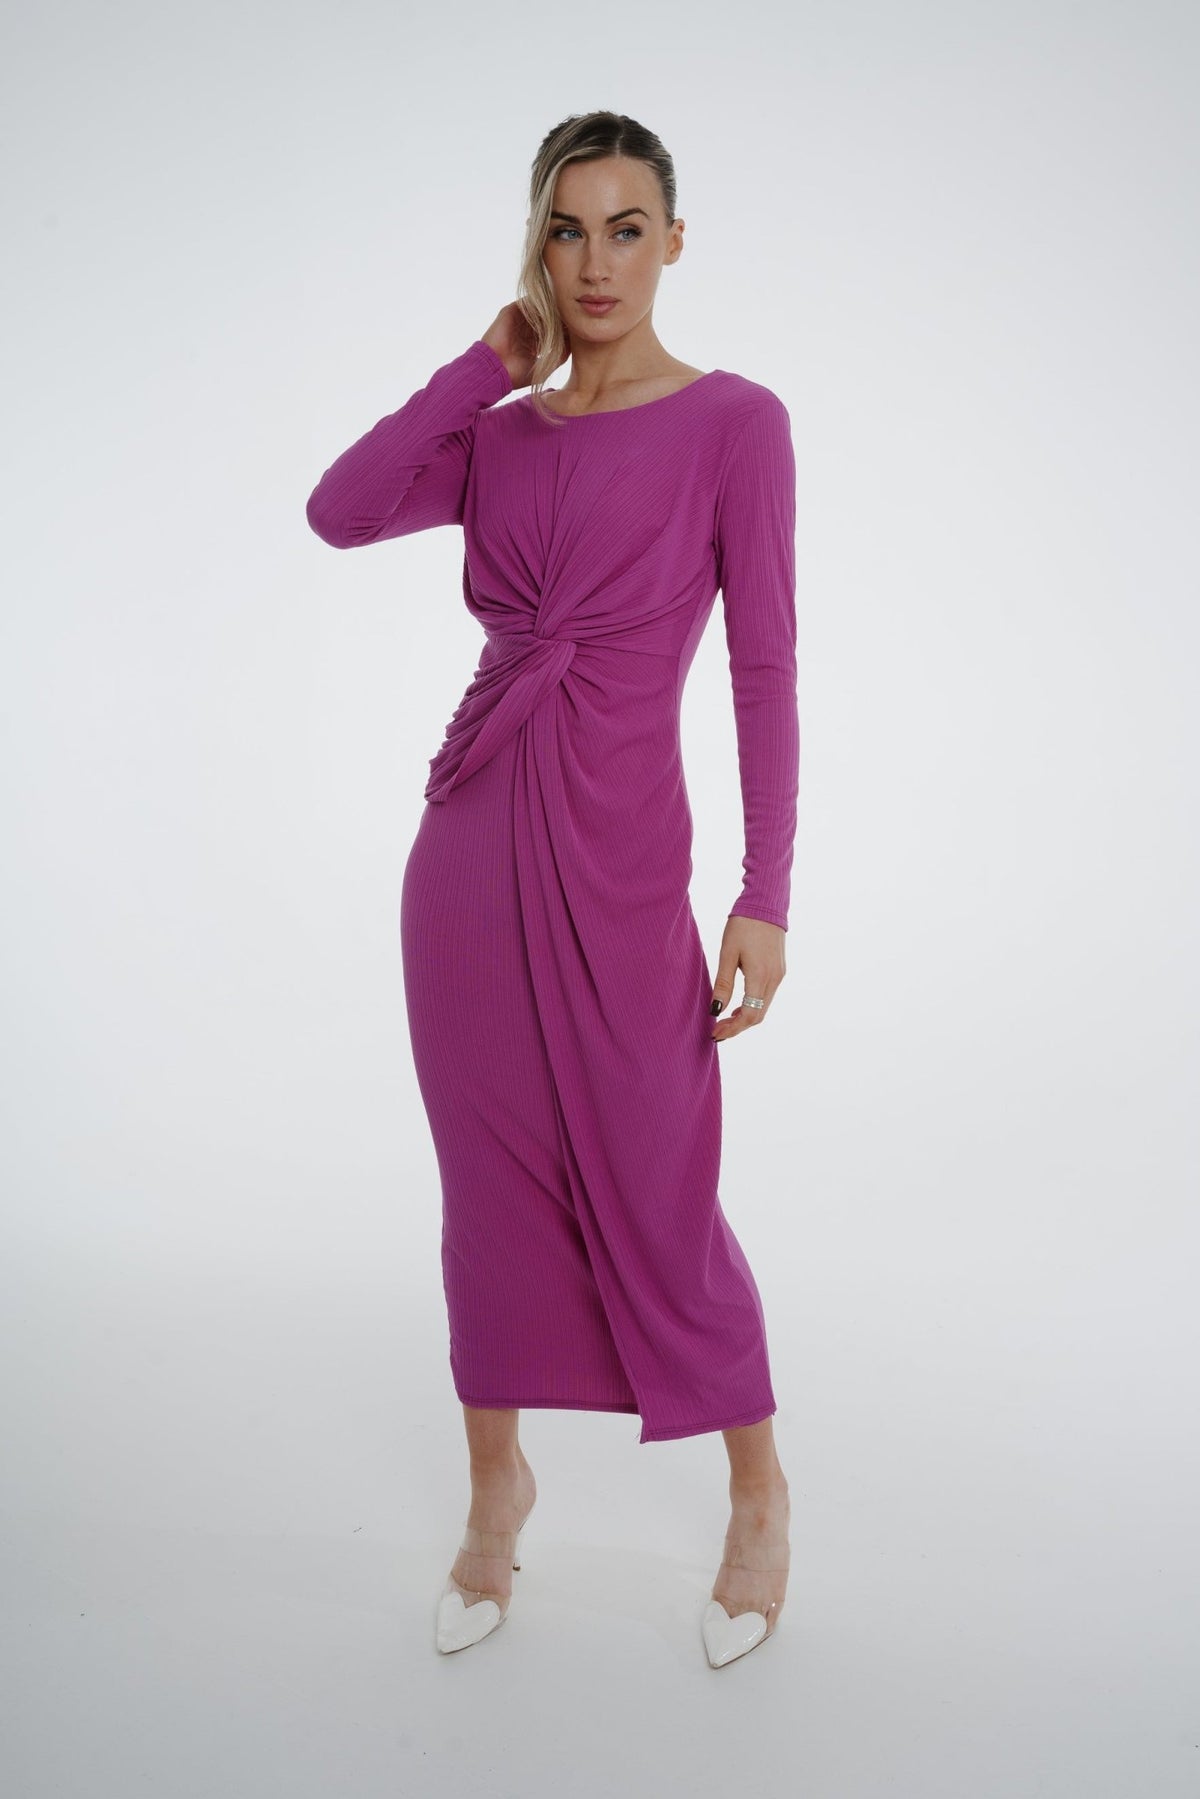 Kelly Knot Front Midi Dress In Purple - The Walk in Wardrobe